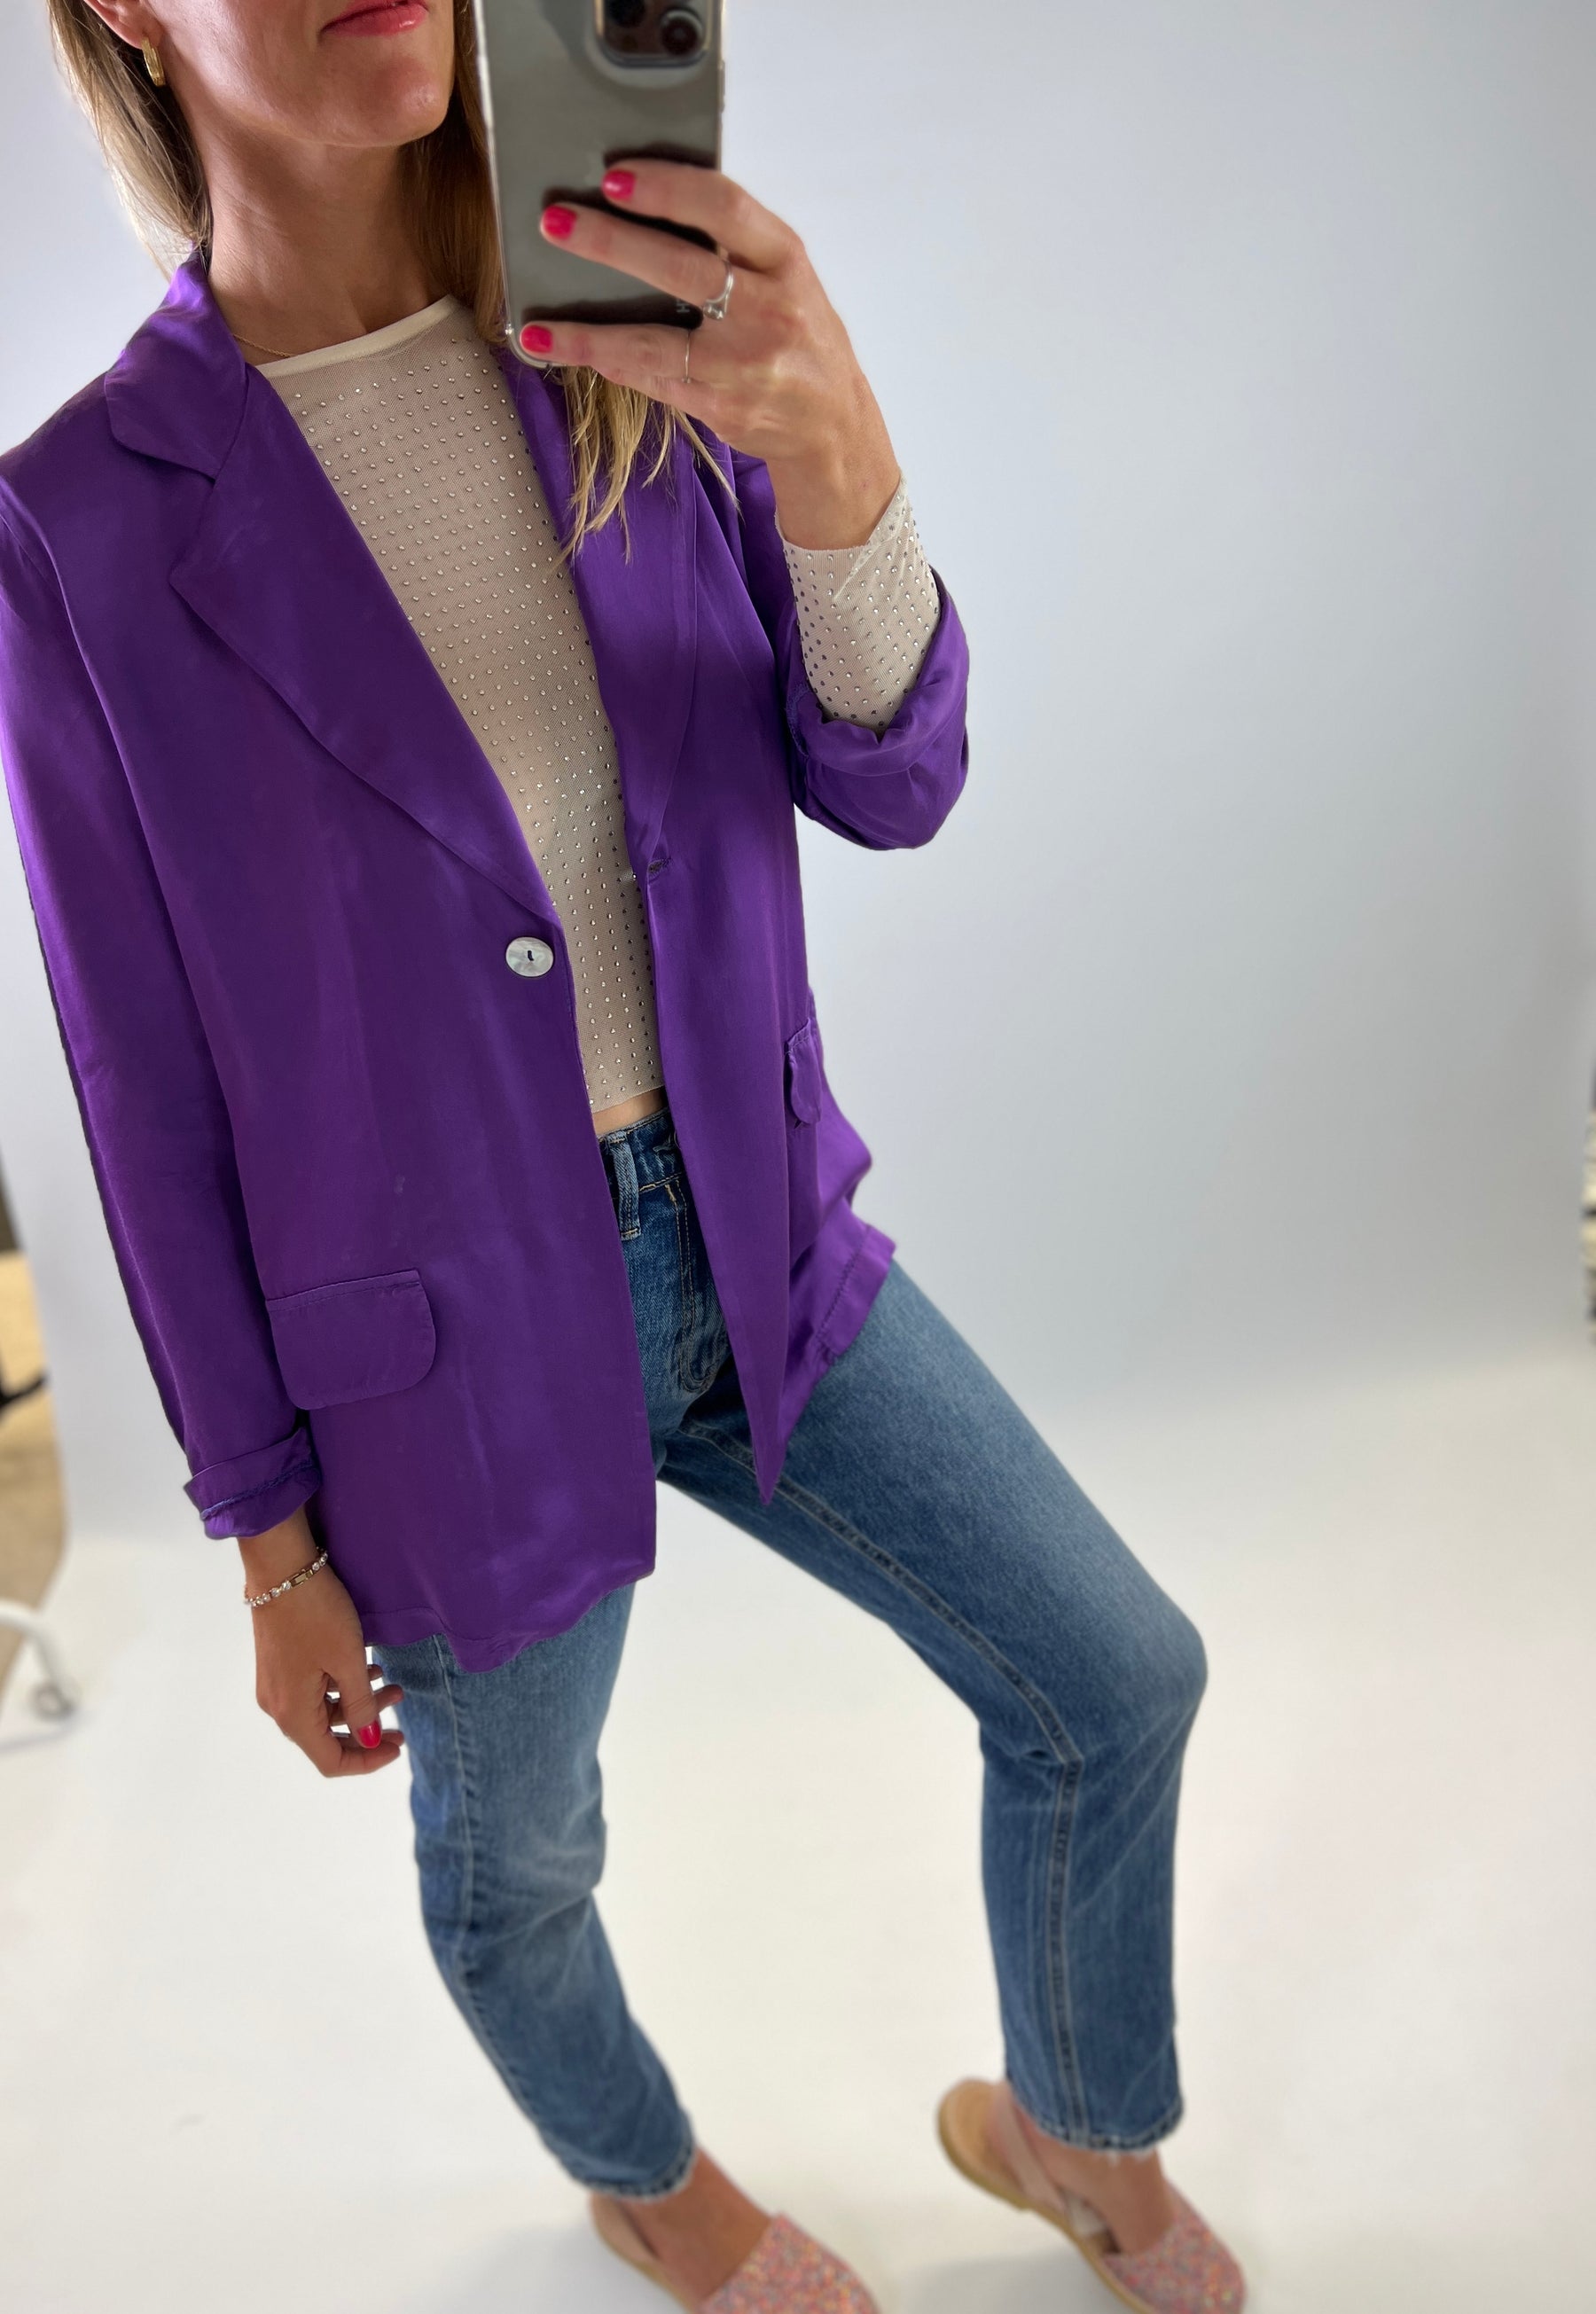 Purple silk viscose single breasted suit jacket 